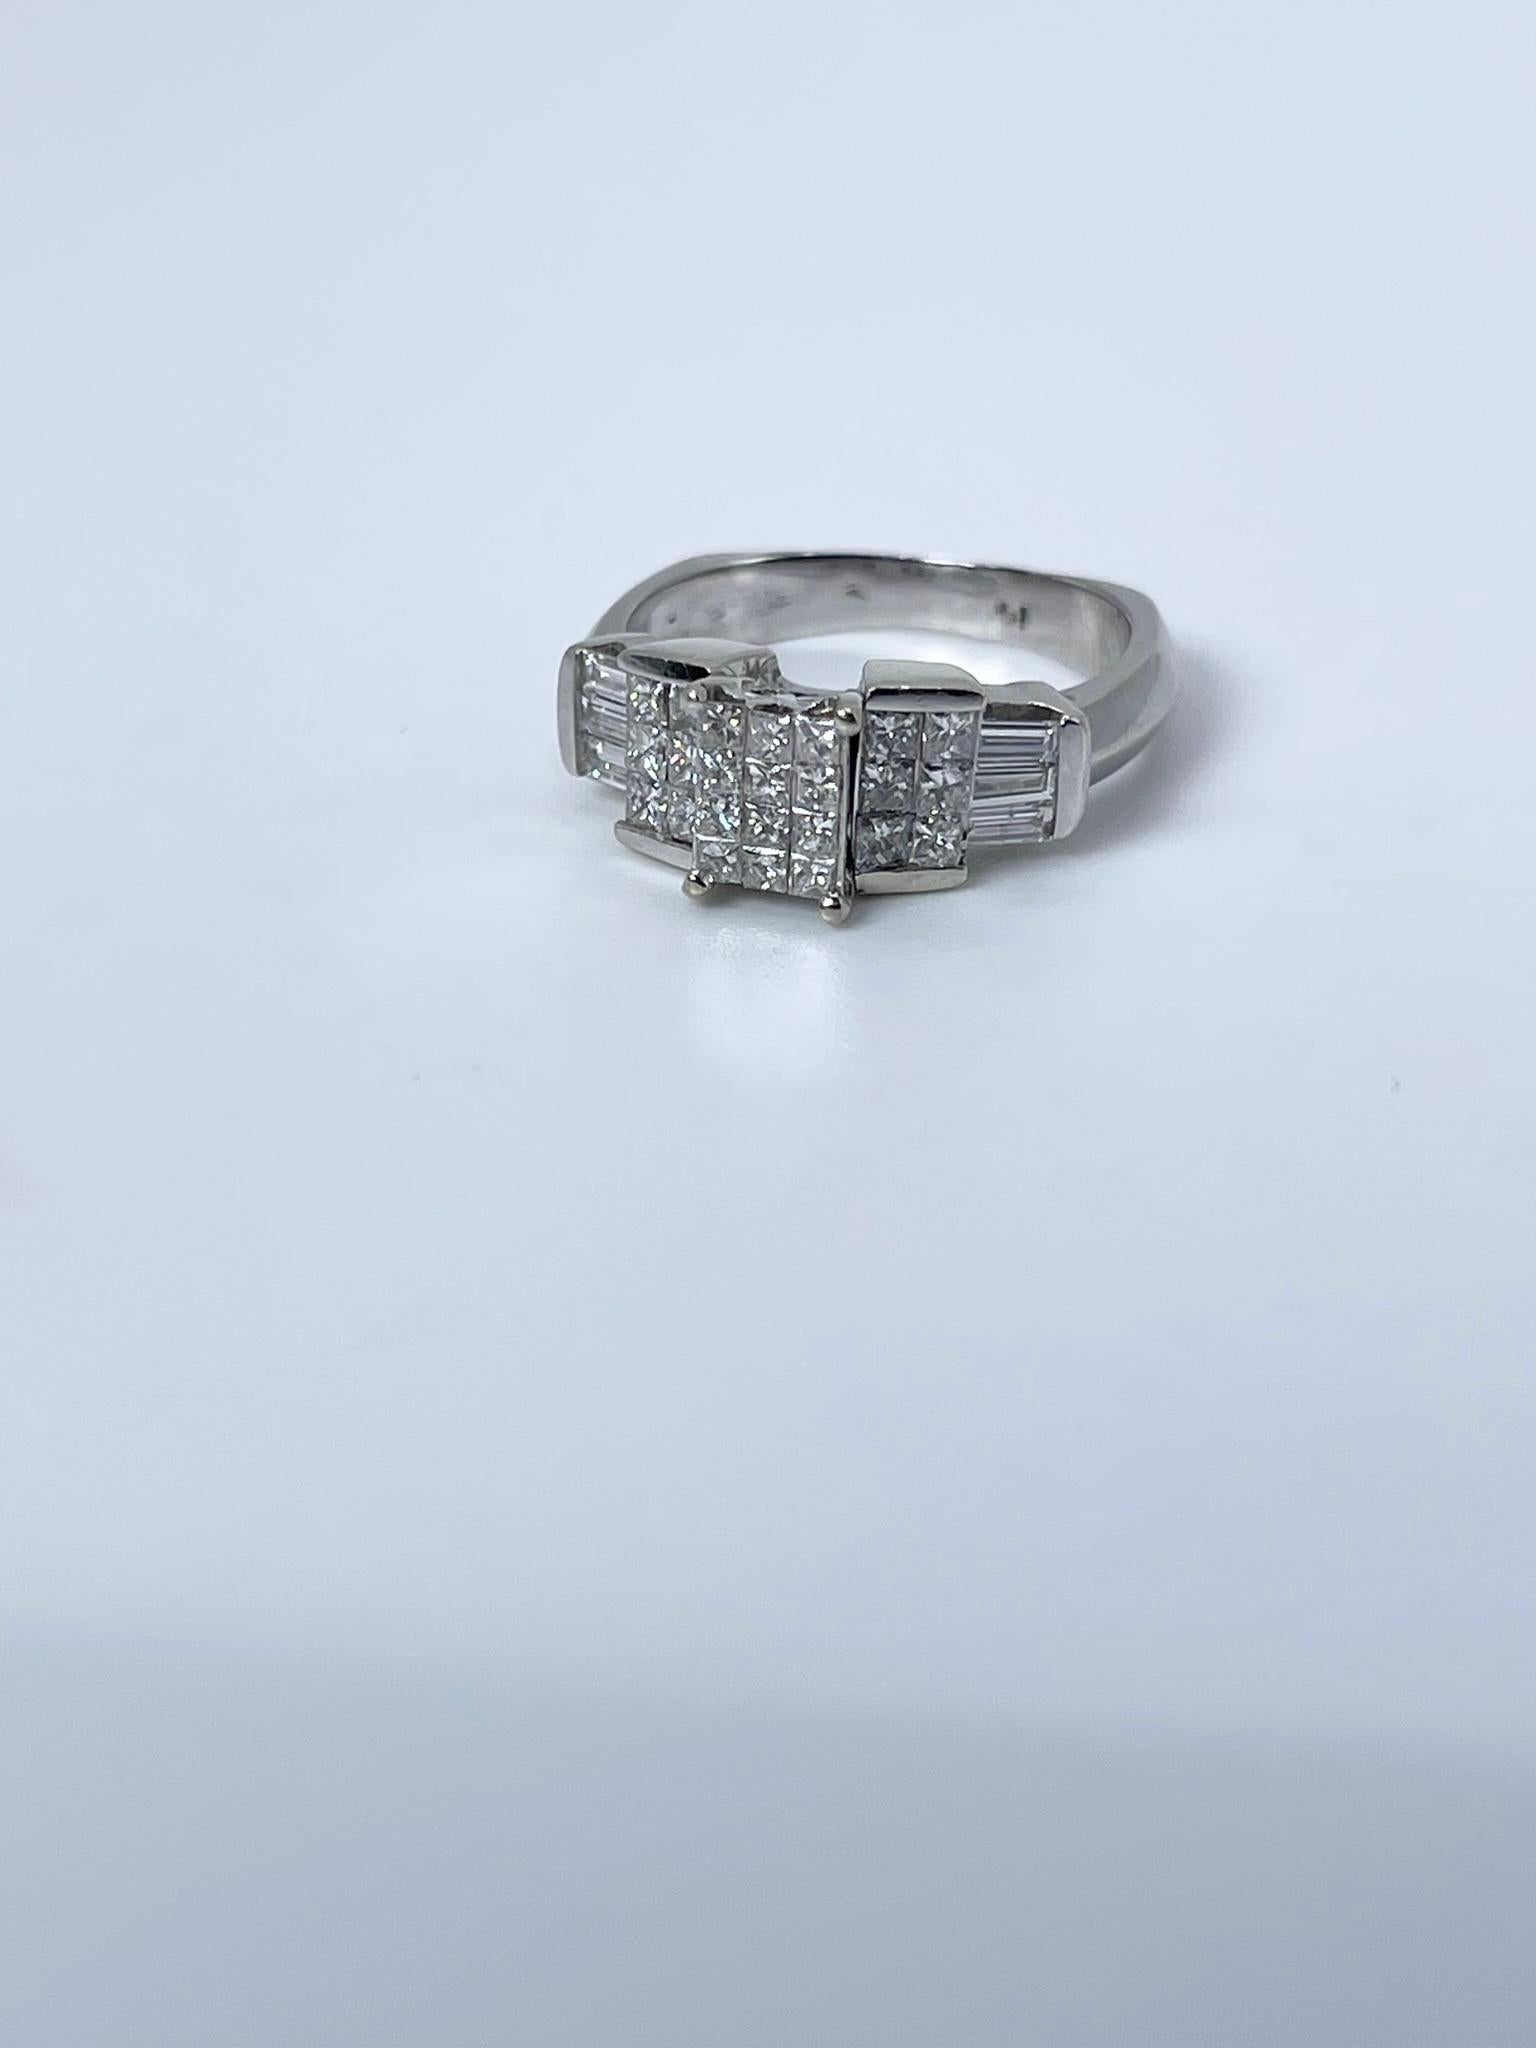 Bague de fiançailles à diamant taille princesse en or blanc 14KT.
CODE ARTICLE : KMP 100-00022
POIDS EN GRAMME : 5.91gr
MÉTAL : 14KT

DIAMANT(S) NATUREL(S)
Coupe : Brillant rond, Brillant carré
Couleur : G
Clarté : SI 
Carat : 0.55ct
Taille : 8(